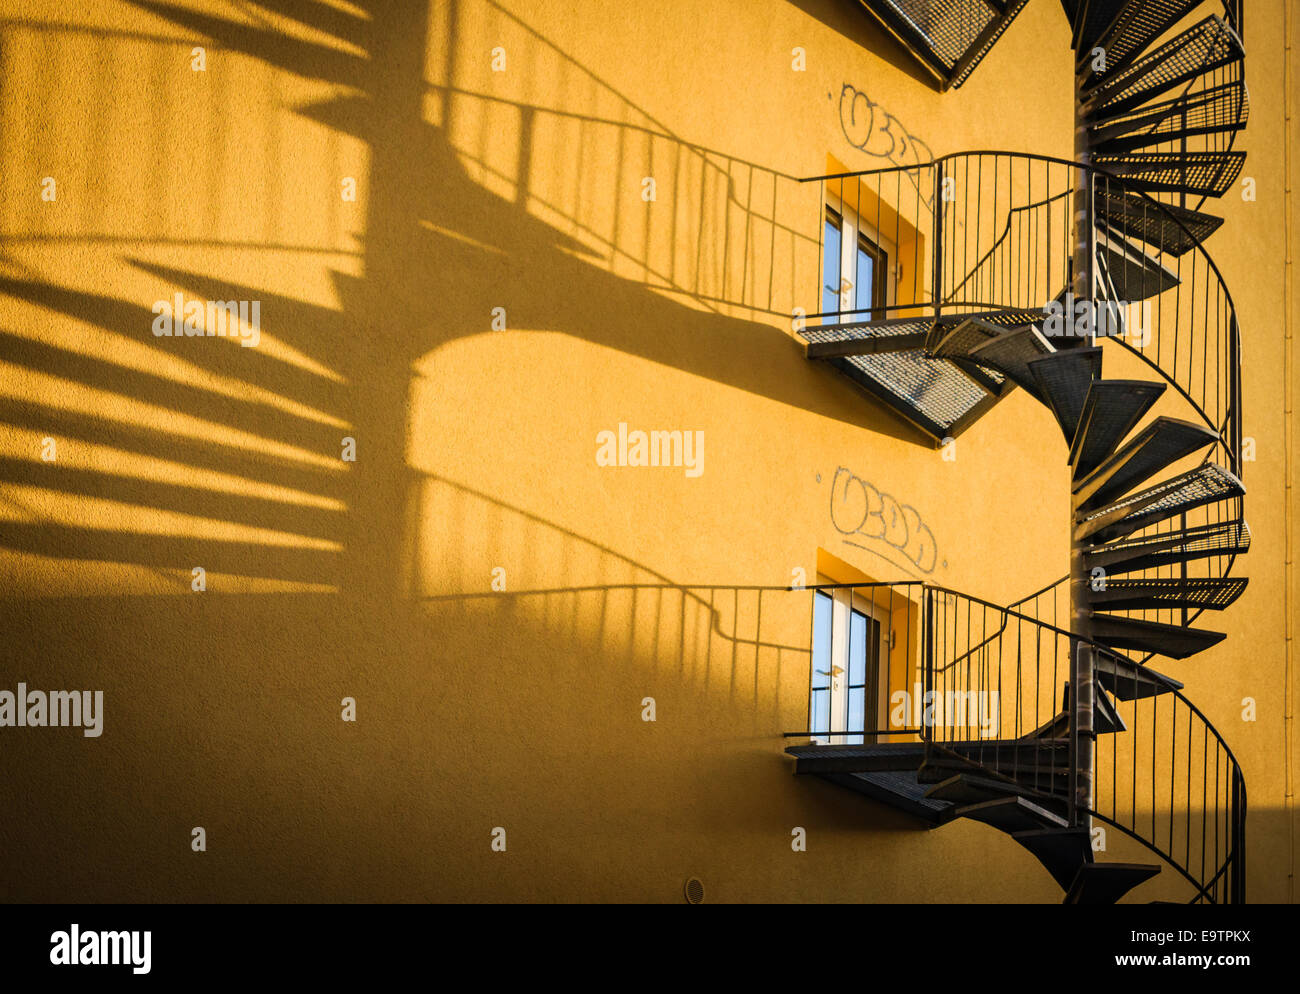 Feuerleiter Treppe auf gelben Wand Gebäude Außenansicht Stockfoto